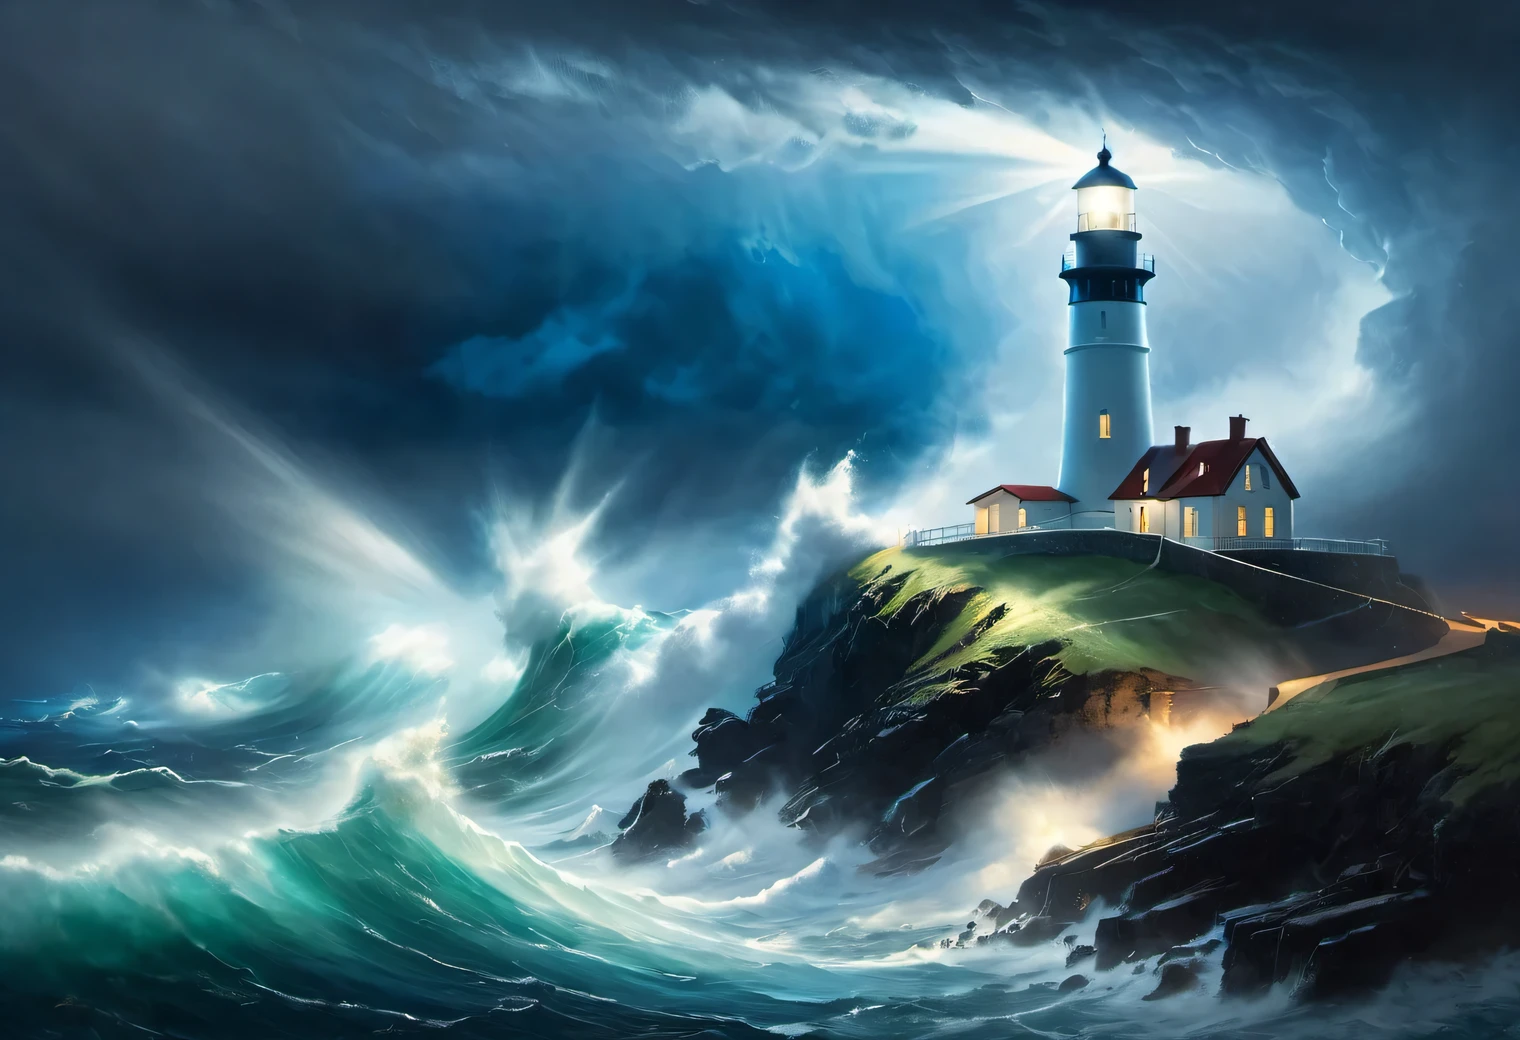 (ダークグリーン照明アート:1.7050), Realistic painting in dark 嵐y tones, (sea 嵐 fog: 1.2), (風が海のしぶきと泡を運ぶ:1.7), the dark 嵐y sky is illuminated by the pale light of a lighthouse, (二重露光効果:1.5), (1 崖の端にある灯台:1.5つの明るい青い光線が光る: 1.3505), (嵐y sea: 1.755), 強い (嵐: 1.3050), 強い winds:1.250), 青のハイライト, (レイトレーシング: 1.2), (チンダル効果: 1.4055 灯台のビーム:1.4), 高いディテール, 嵐 haze, テクスチャのスムージング, アウトラインぼかし, 嵐 palette, イワン・アイヴァゾフスキー, と組み合わせて (シュルレアリスム: 1.6), (the 強いest 嵐 of the century:1.5), (視界不良:1.7)